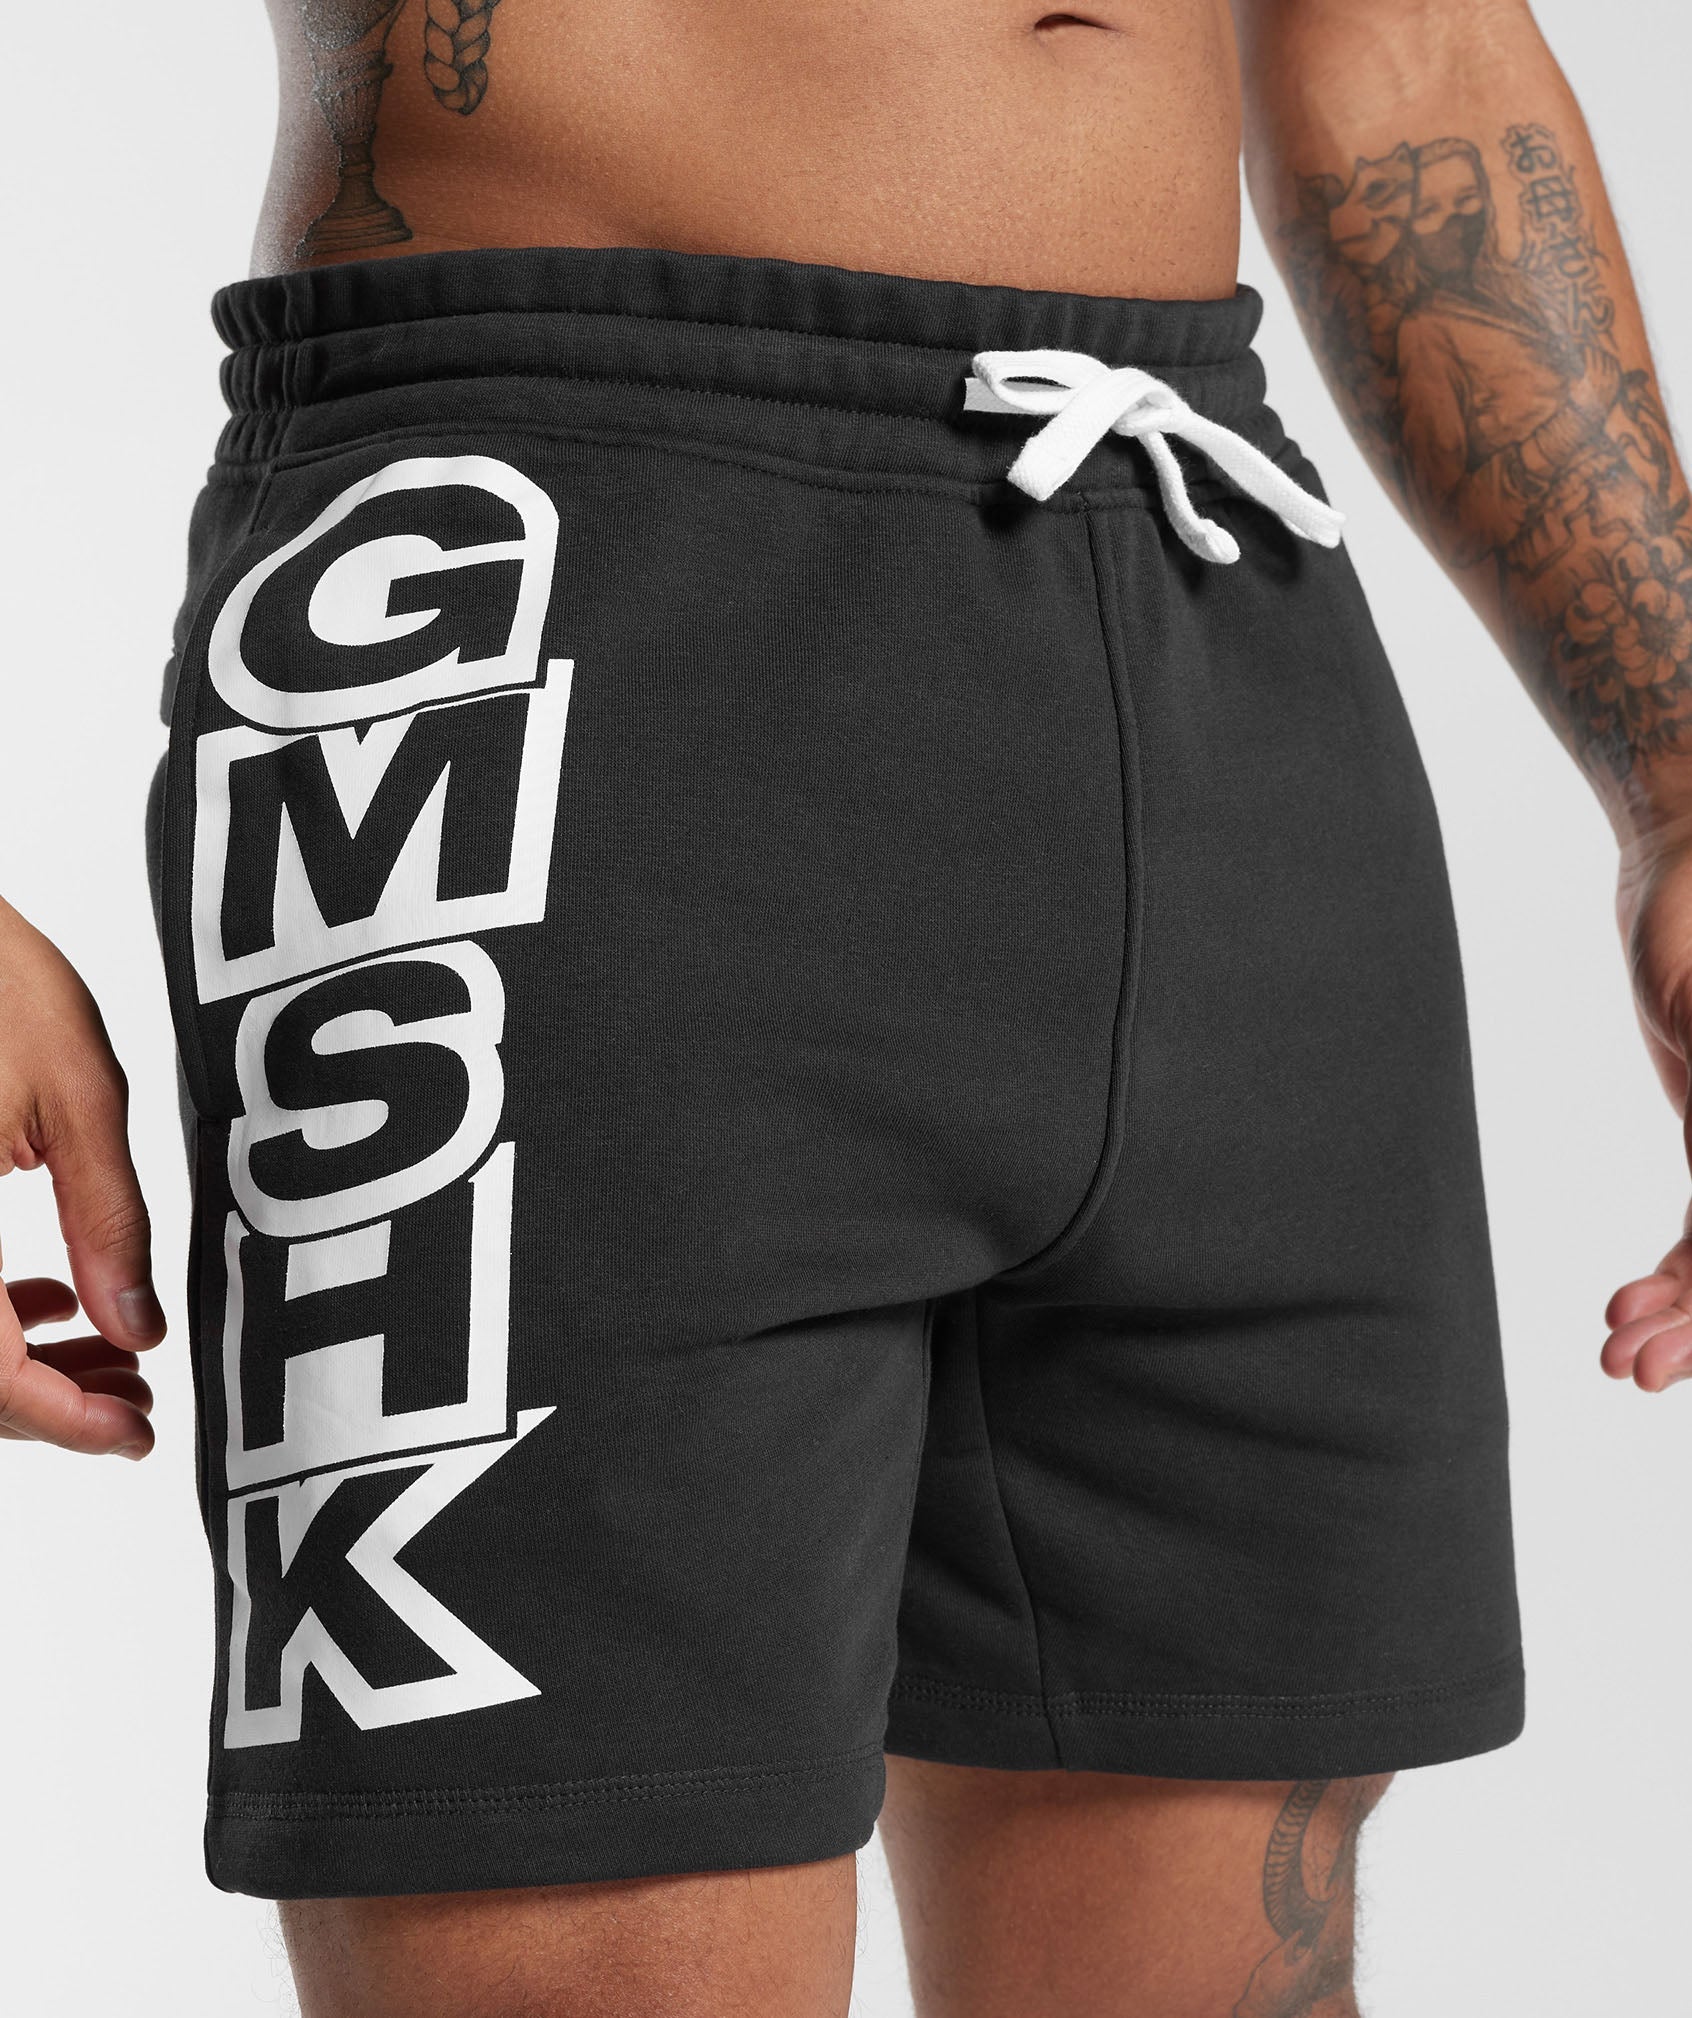 GMSHK Shorts in Black - view 5